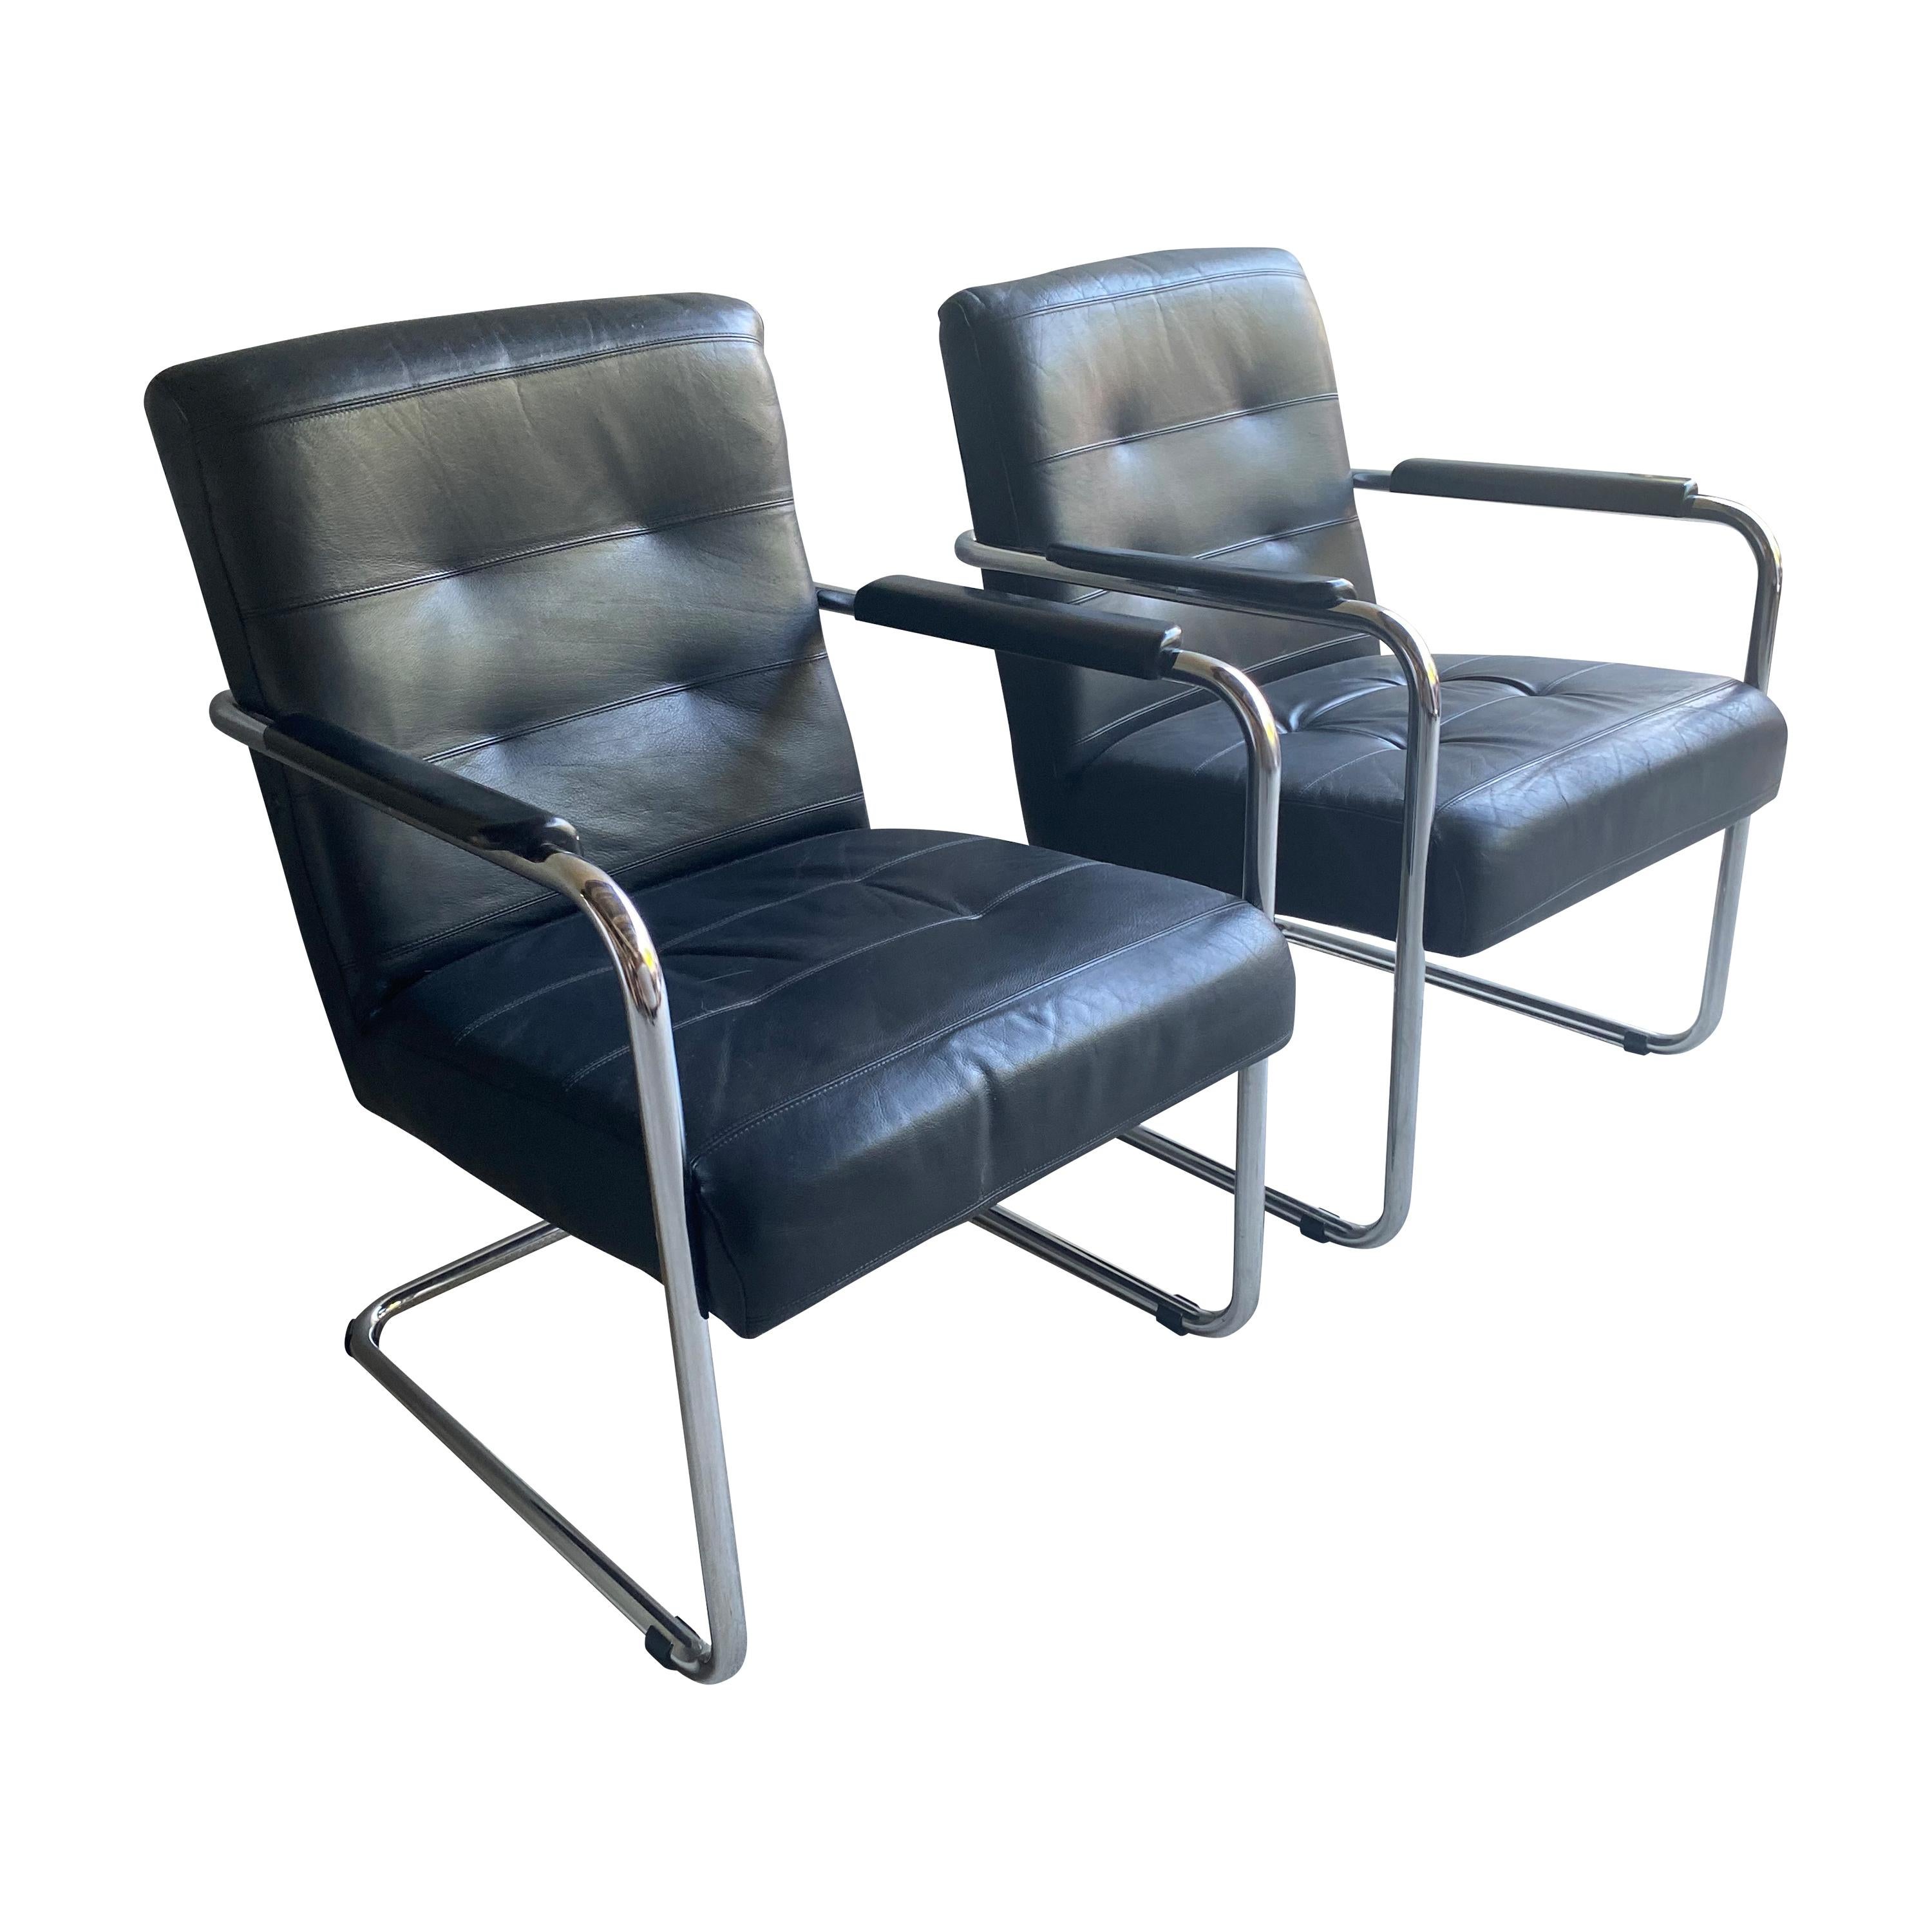 Klassisch moderner europäischer Sessel aus schwarzem Leder und Chromrohr.  Bequem mit großzügigem Umfang und leichtem Schwung durch die freitragende Konstruktion. 1970-80's.  Zwei verfügbar, separat erhältlich.